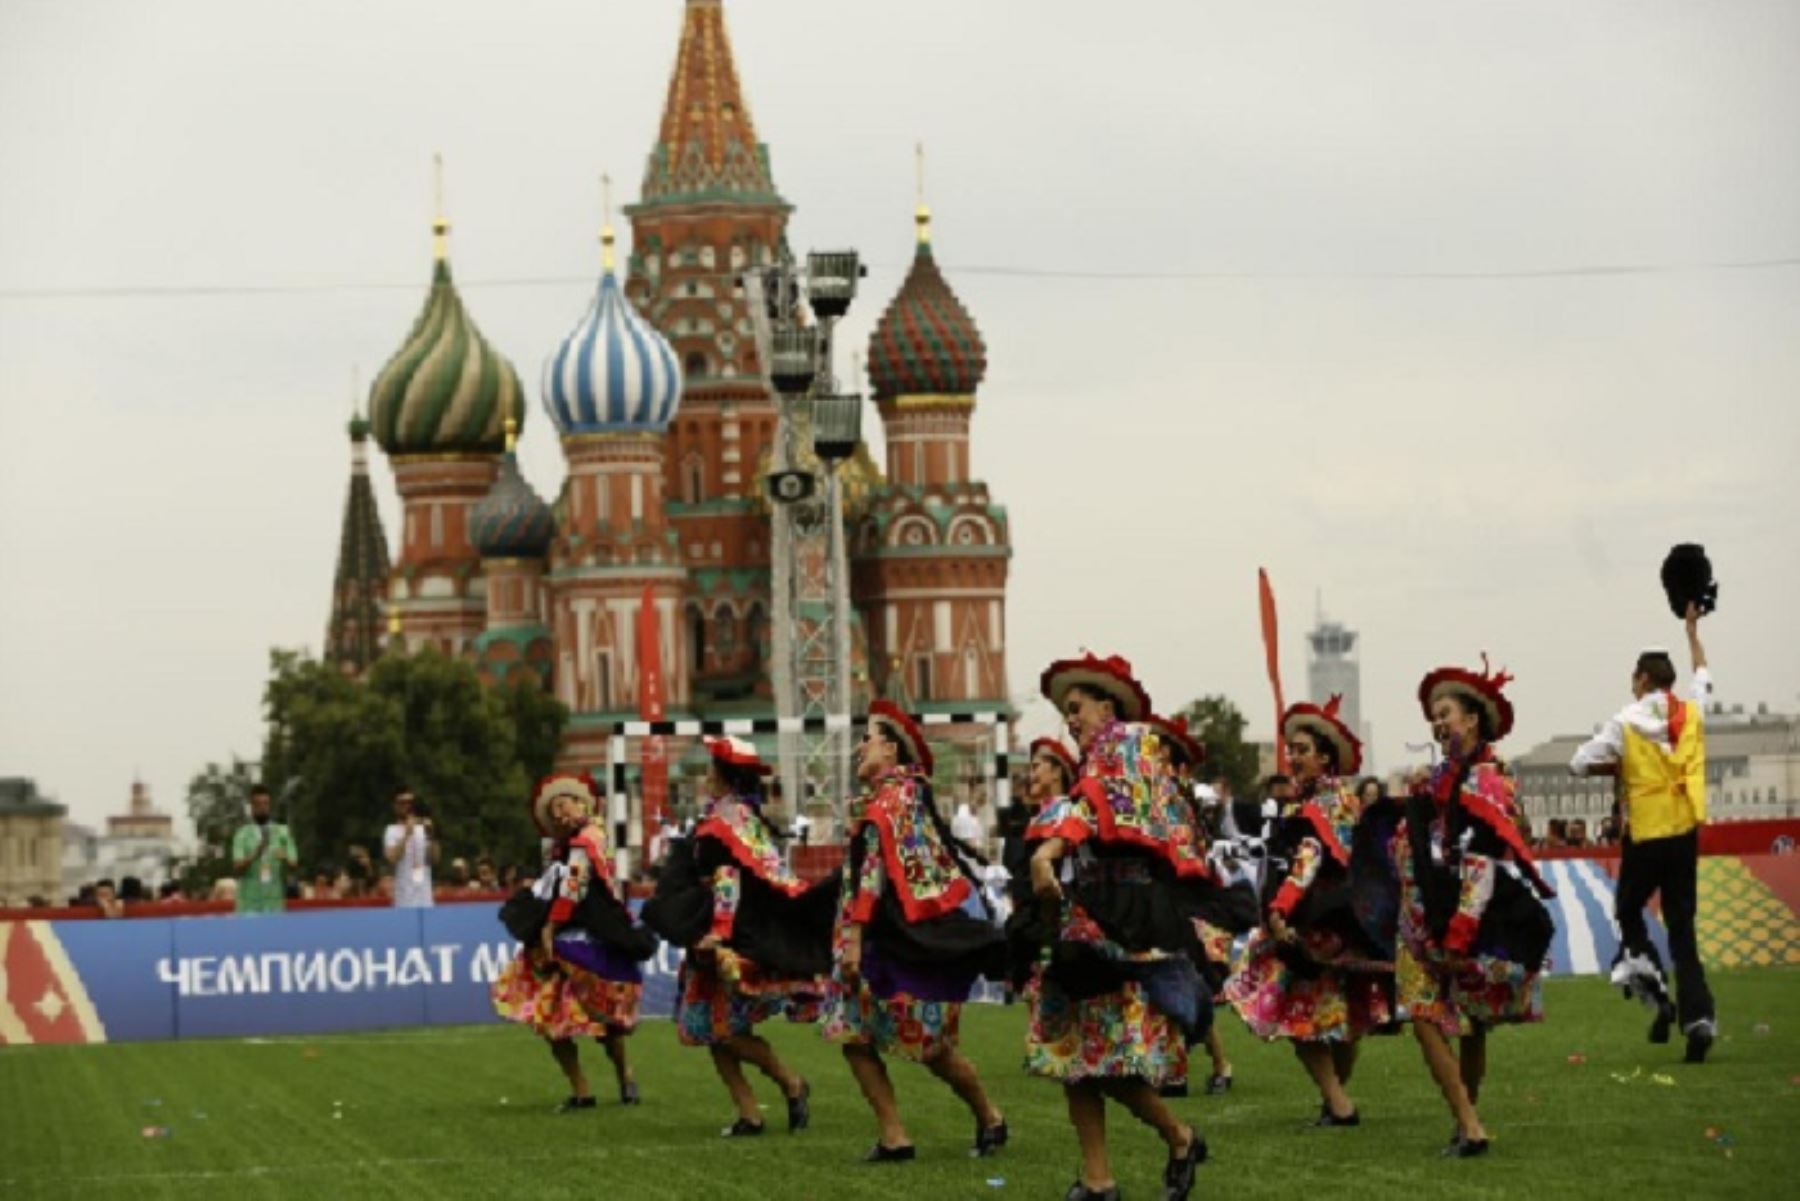 Los ritmos peruanos conquistaron la Plaza Roja de Moscú gracias a la presentación del Elenco Nacional del Folclore y La Patronal, quienes contagiaron la alegría de nuestro país a los miles de seguidores del balompié que se congregan diariamente en este punto de la ciudad, en el marco del Mundial de Fútbol Rusia 2018, informó Promperú.